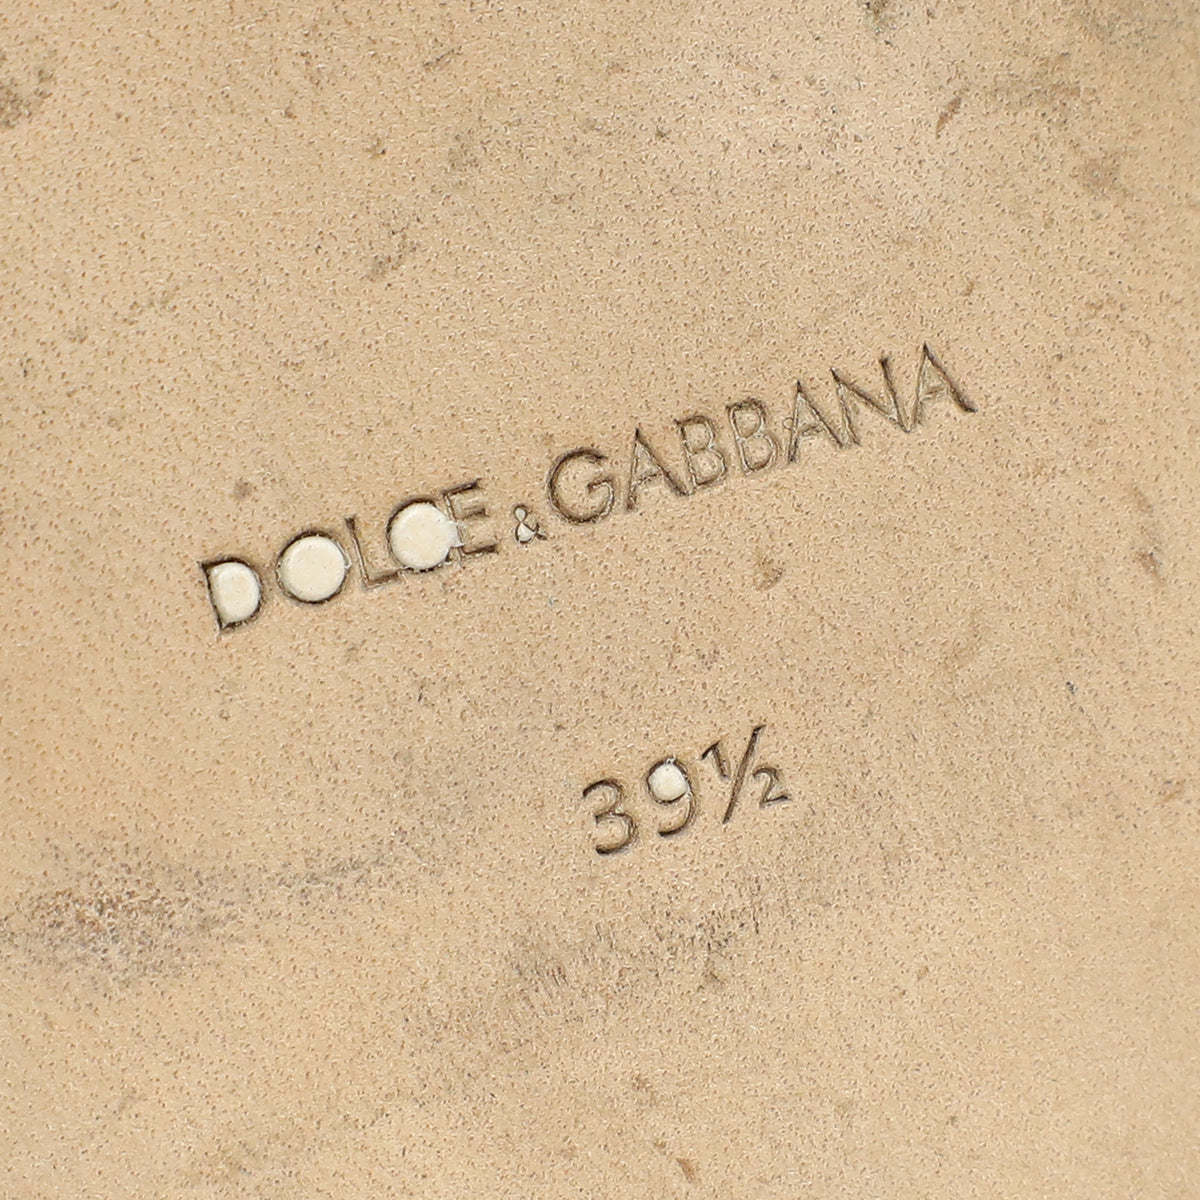 Dolce & Gabbana Nude Bianca Slides w/DG Millennials Cut Out Logo 39.5